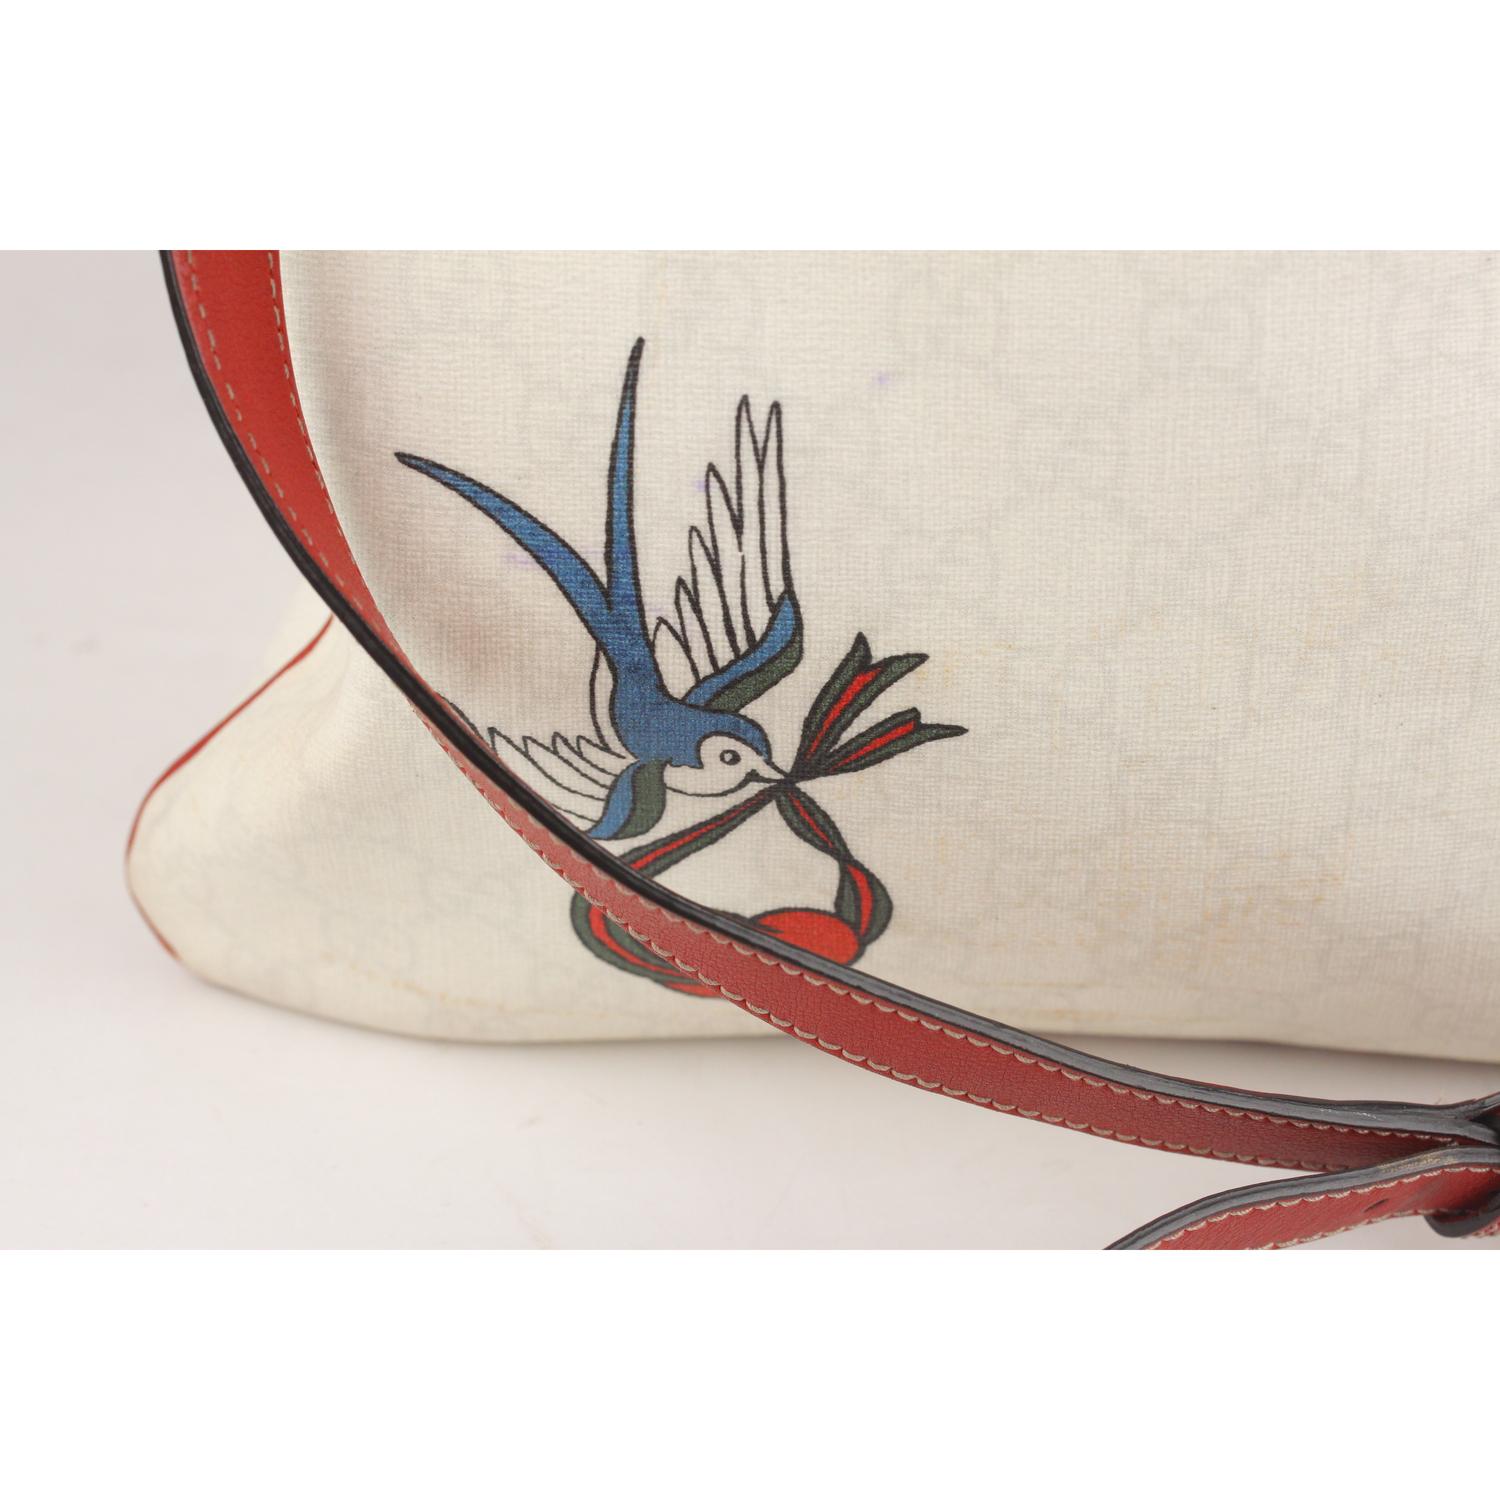 gucci bird messenger bag